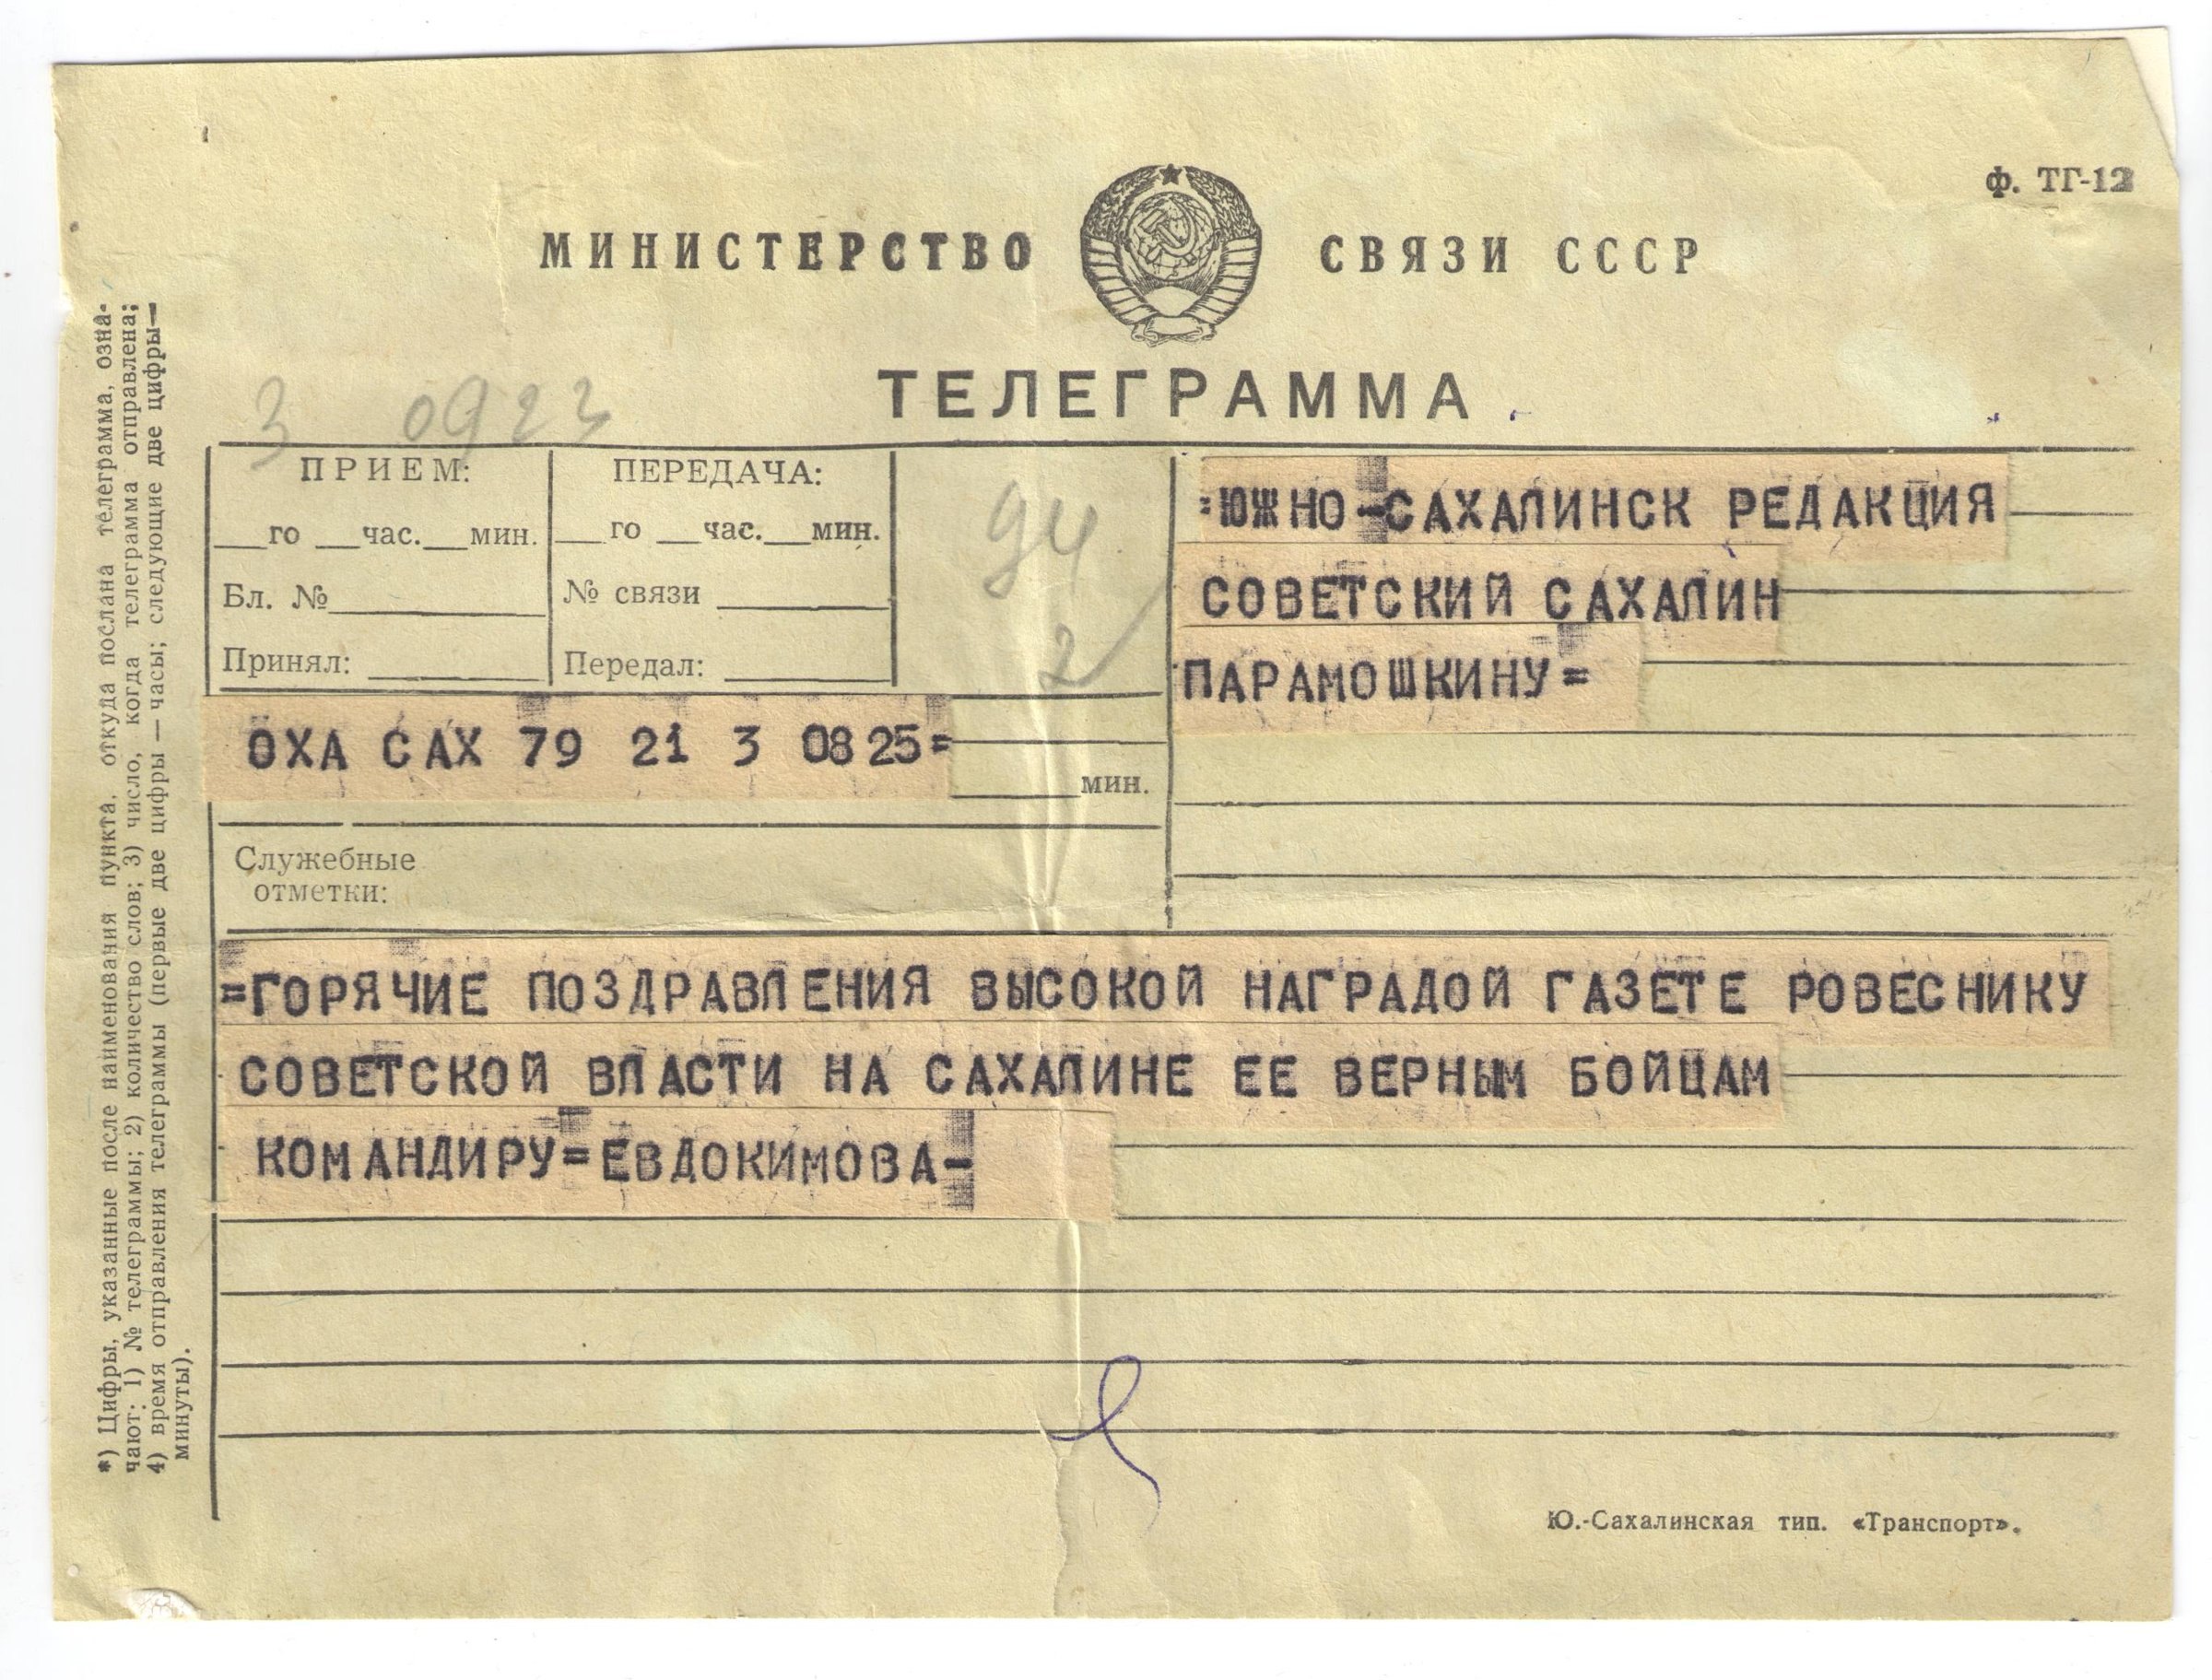 Бланк телеграммы почты россии скачать фото 96